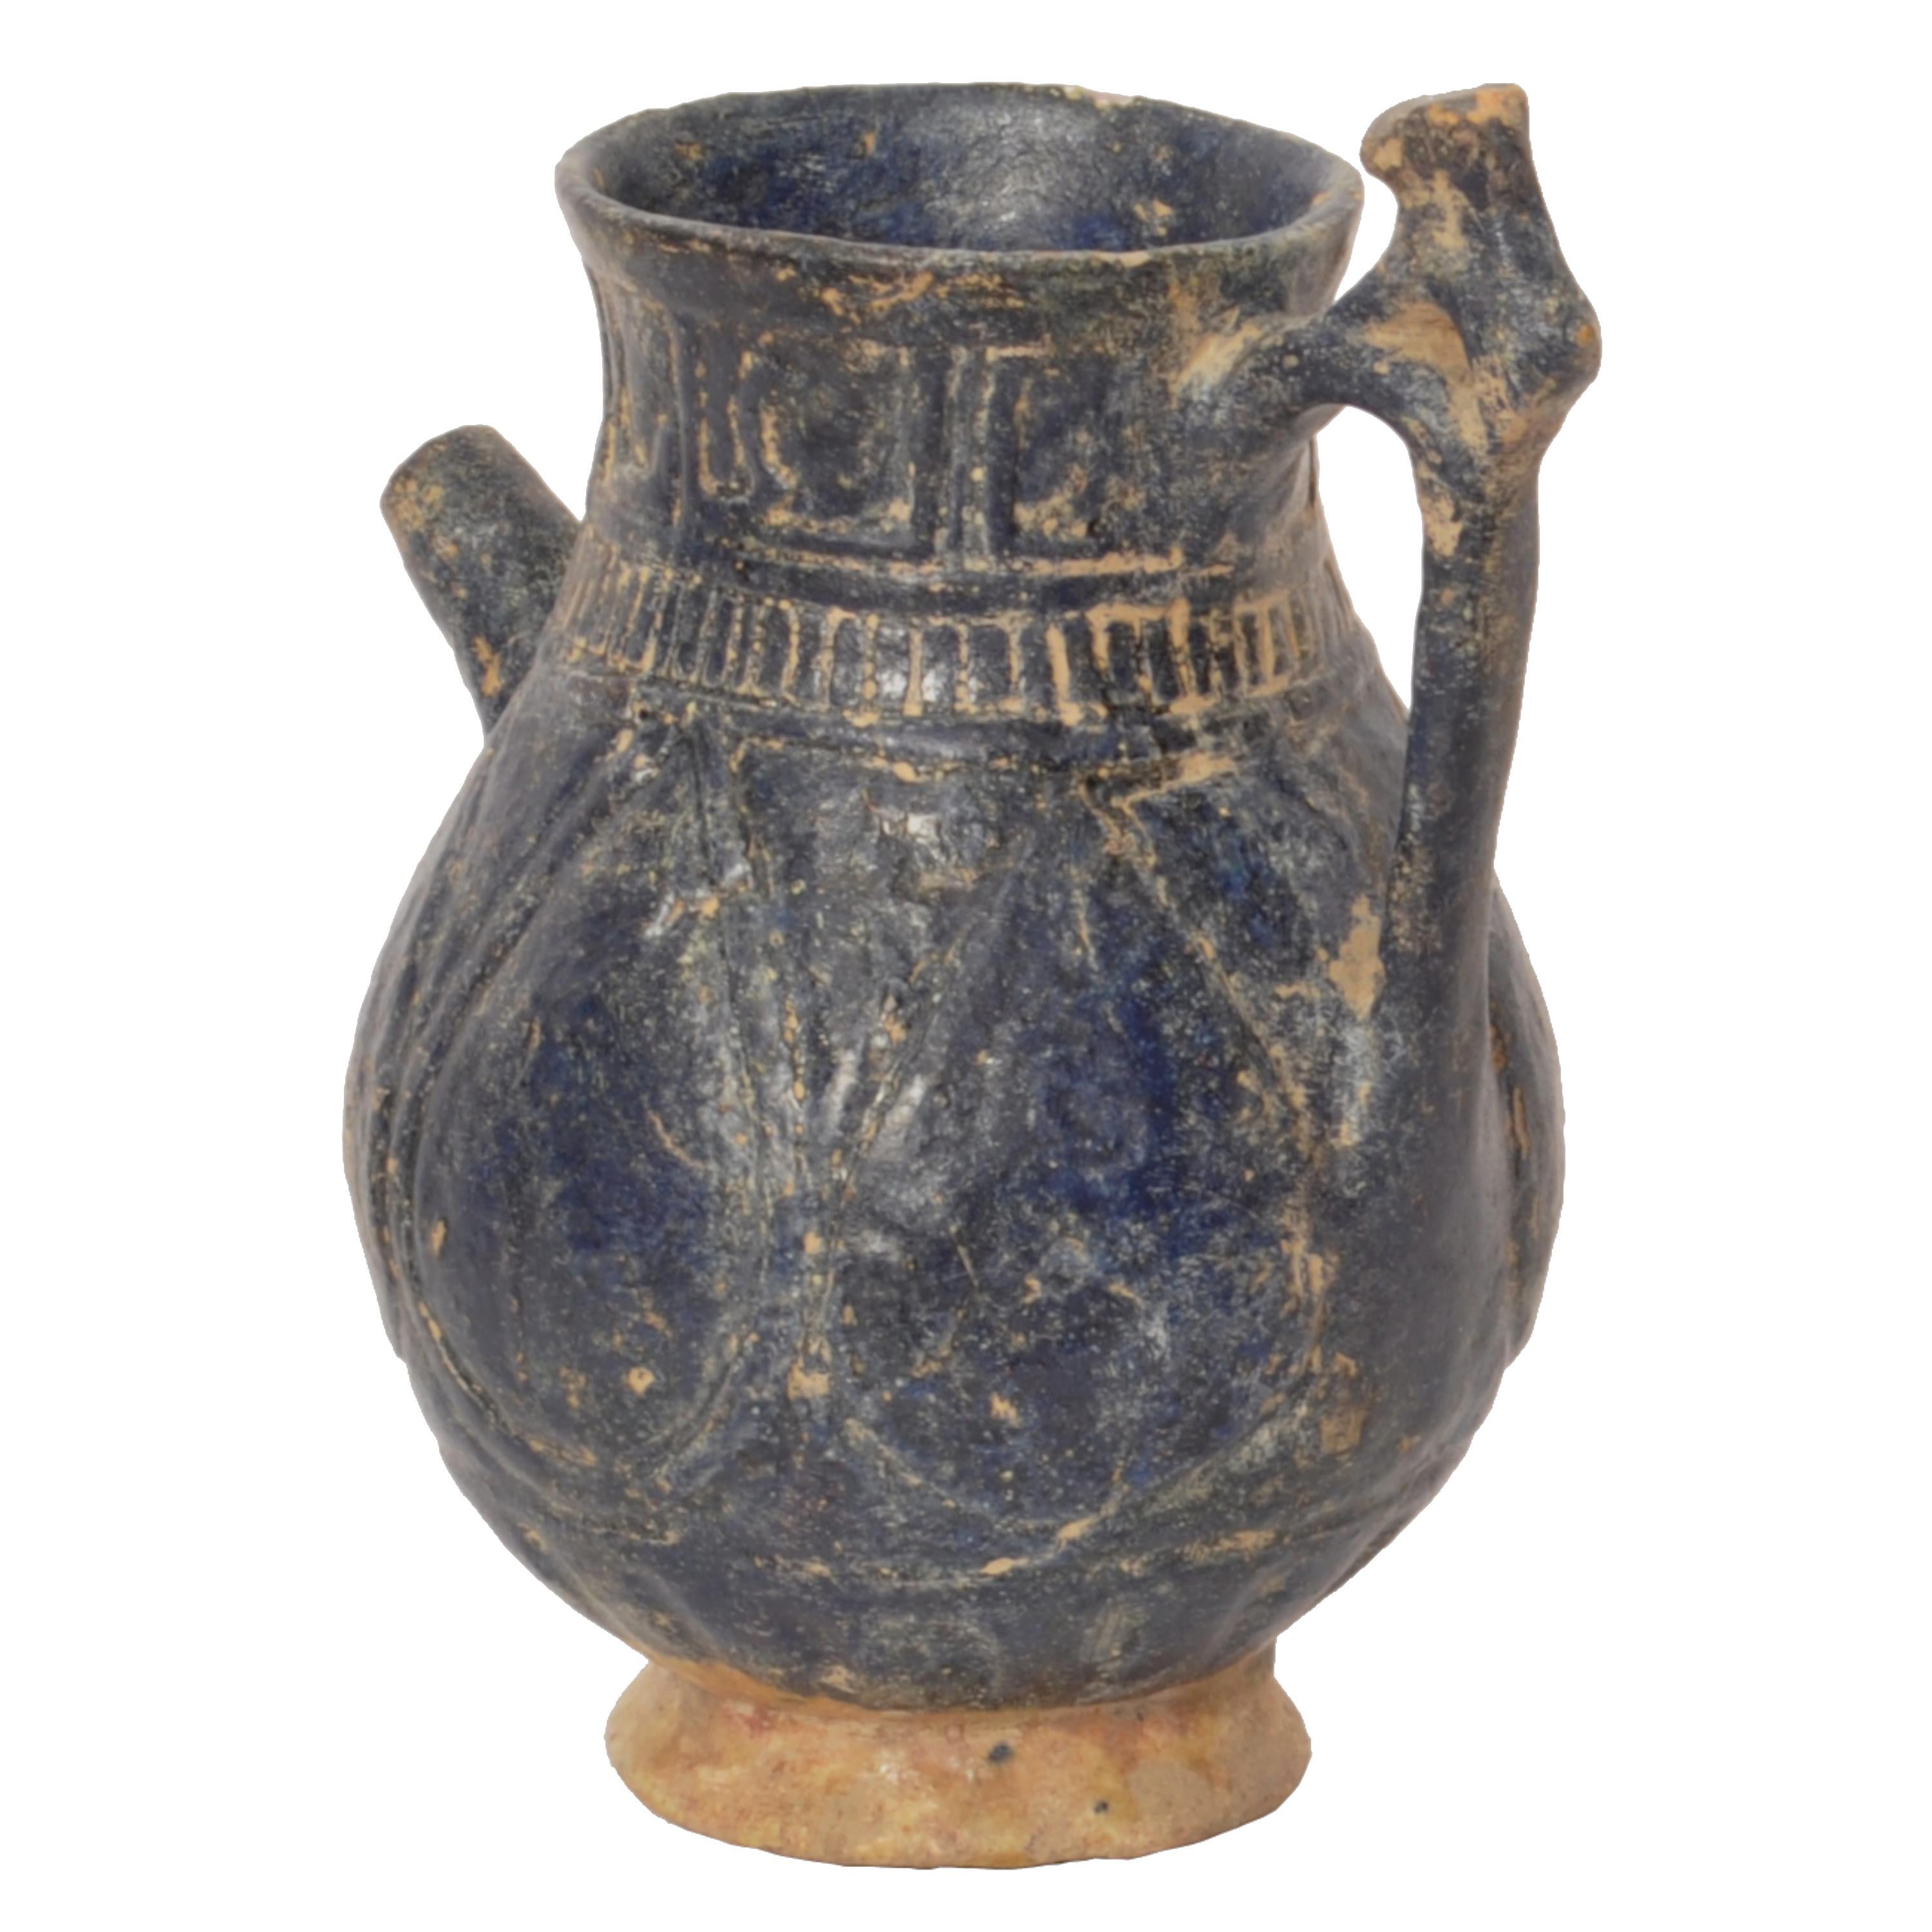 Ein seltenes altpersisches, völlig intaktes islamisches Gefäß aus dem 12./13. Jahrhundert aus Khorasan.
Das Gefäß hat eine tiefblaue Glasur und ein Band mit eingeschnittener islamischer Kaligraphie auf der Oberseite. Der balusterförmige Körper ist